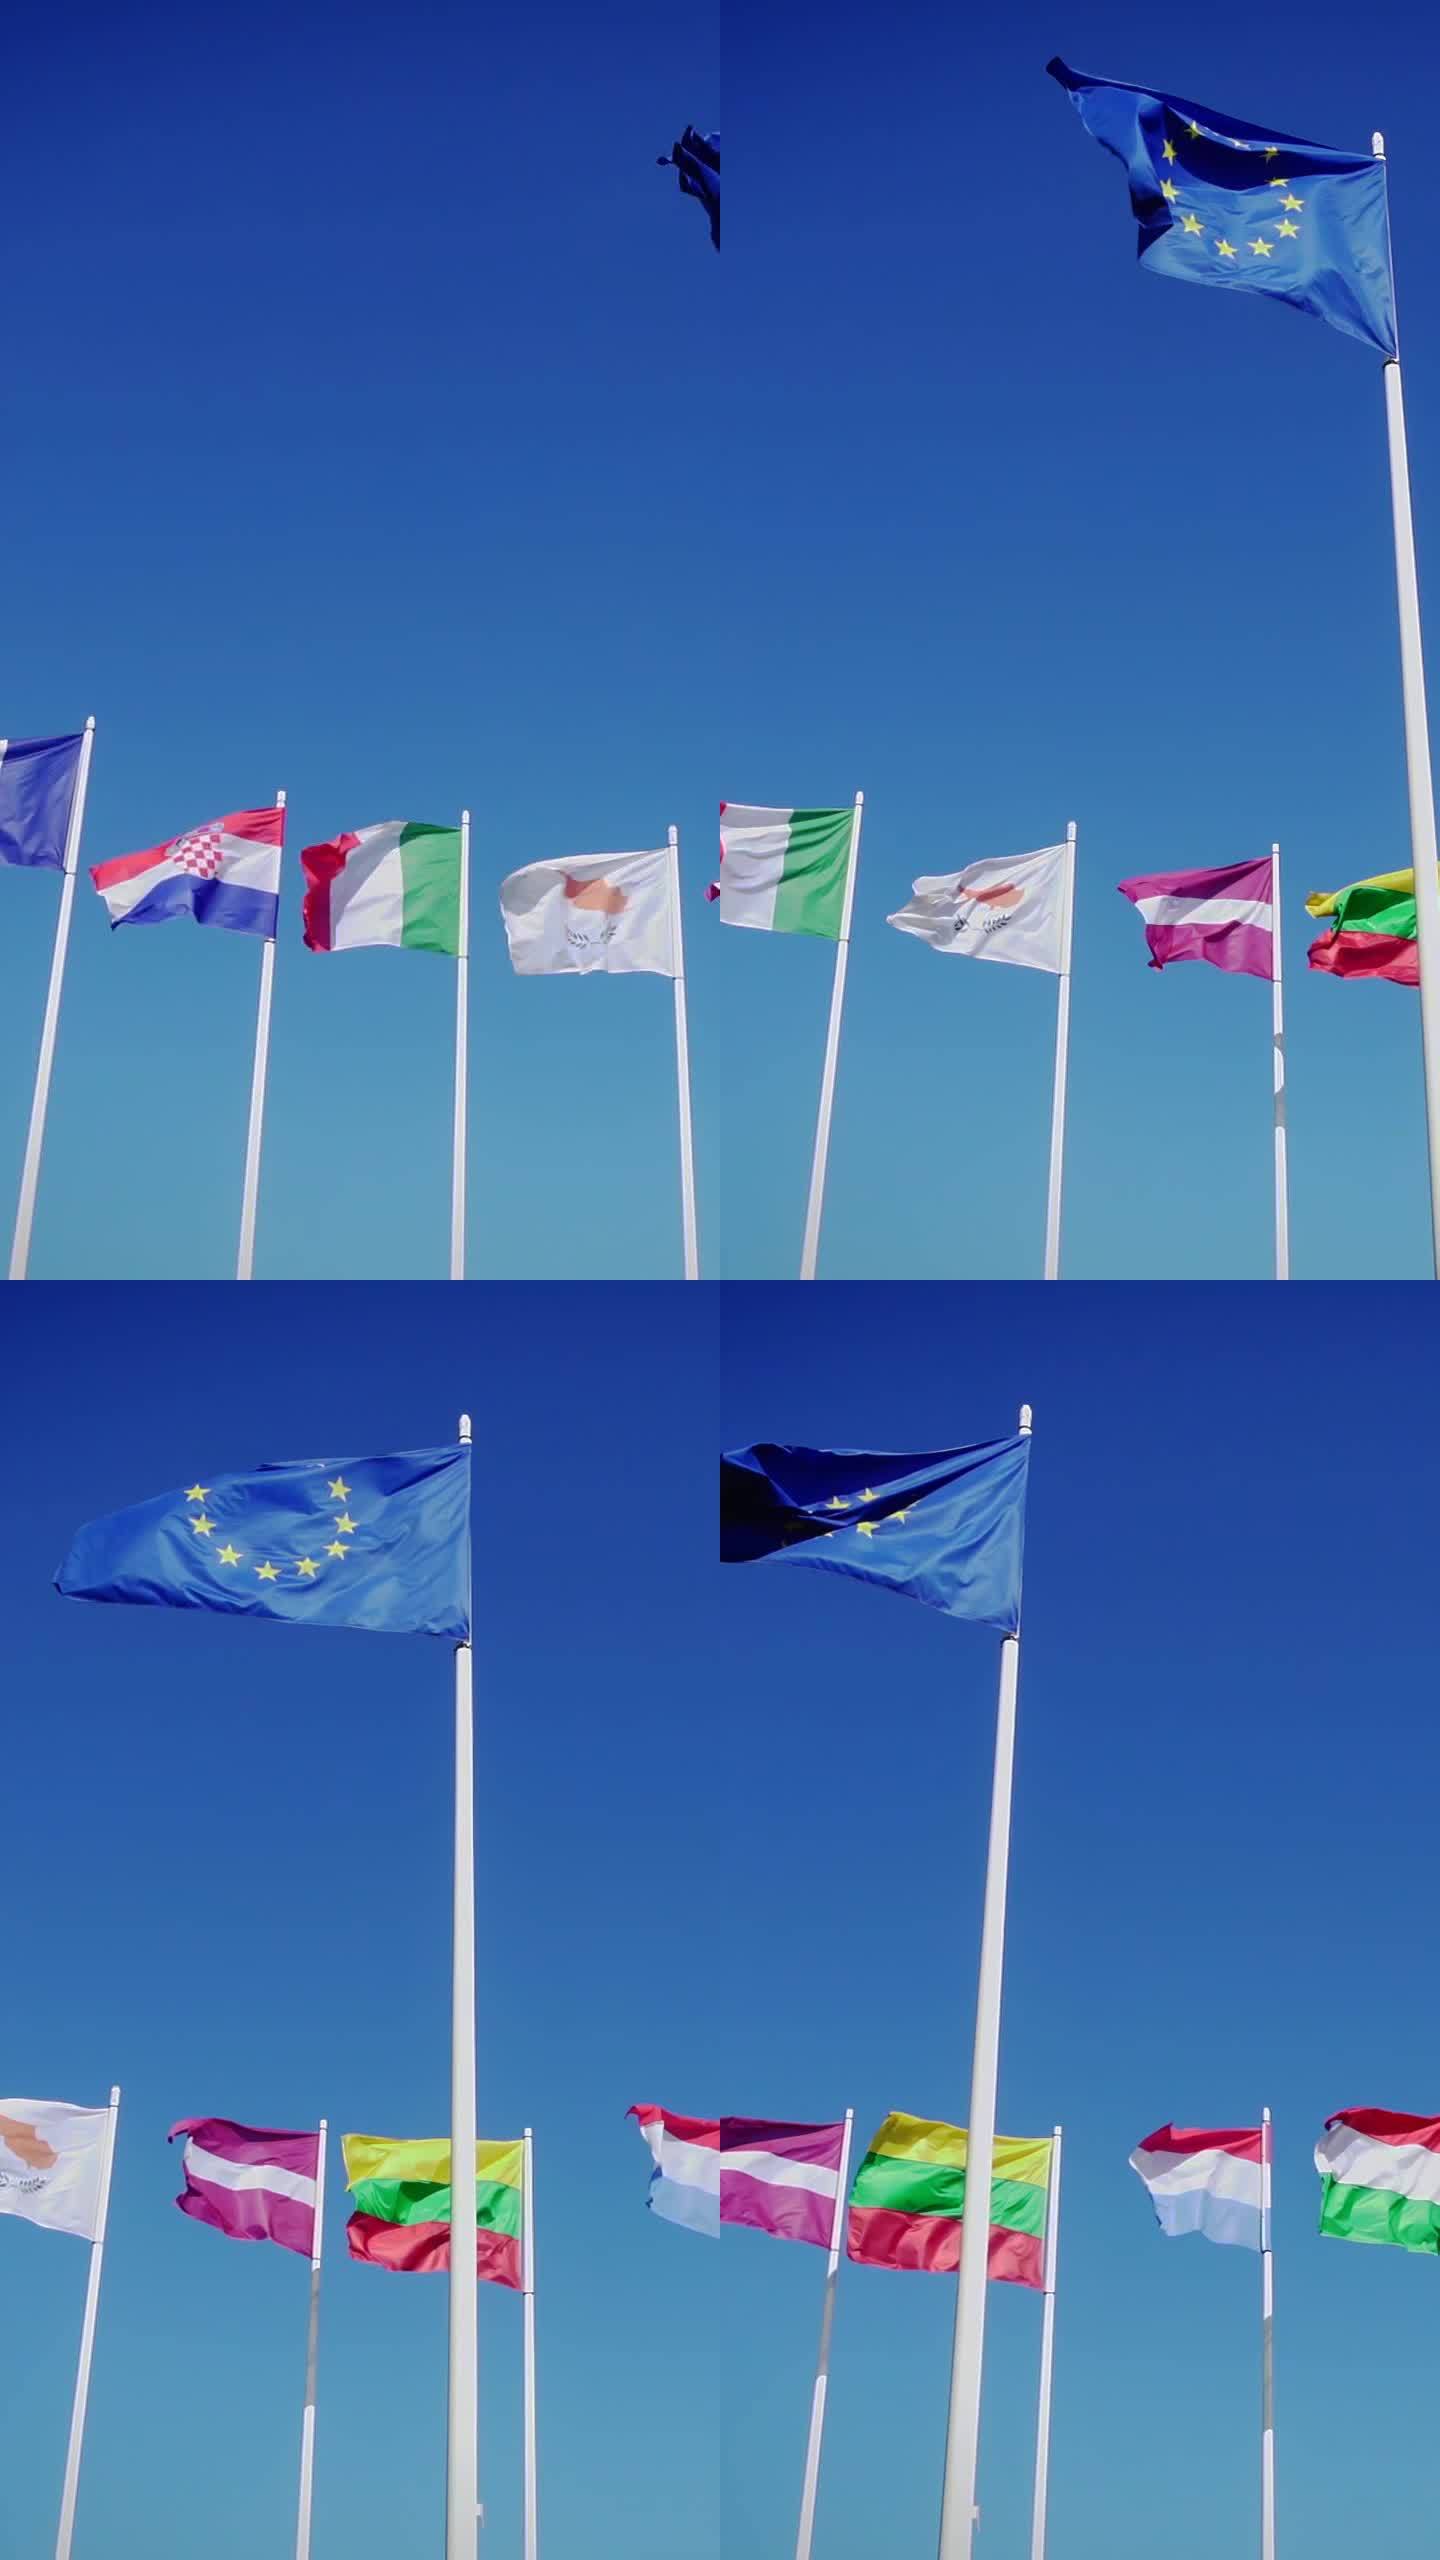 蔚蓝的天空映衬着欧盟和各国的旗帜